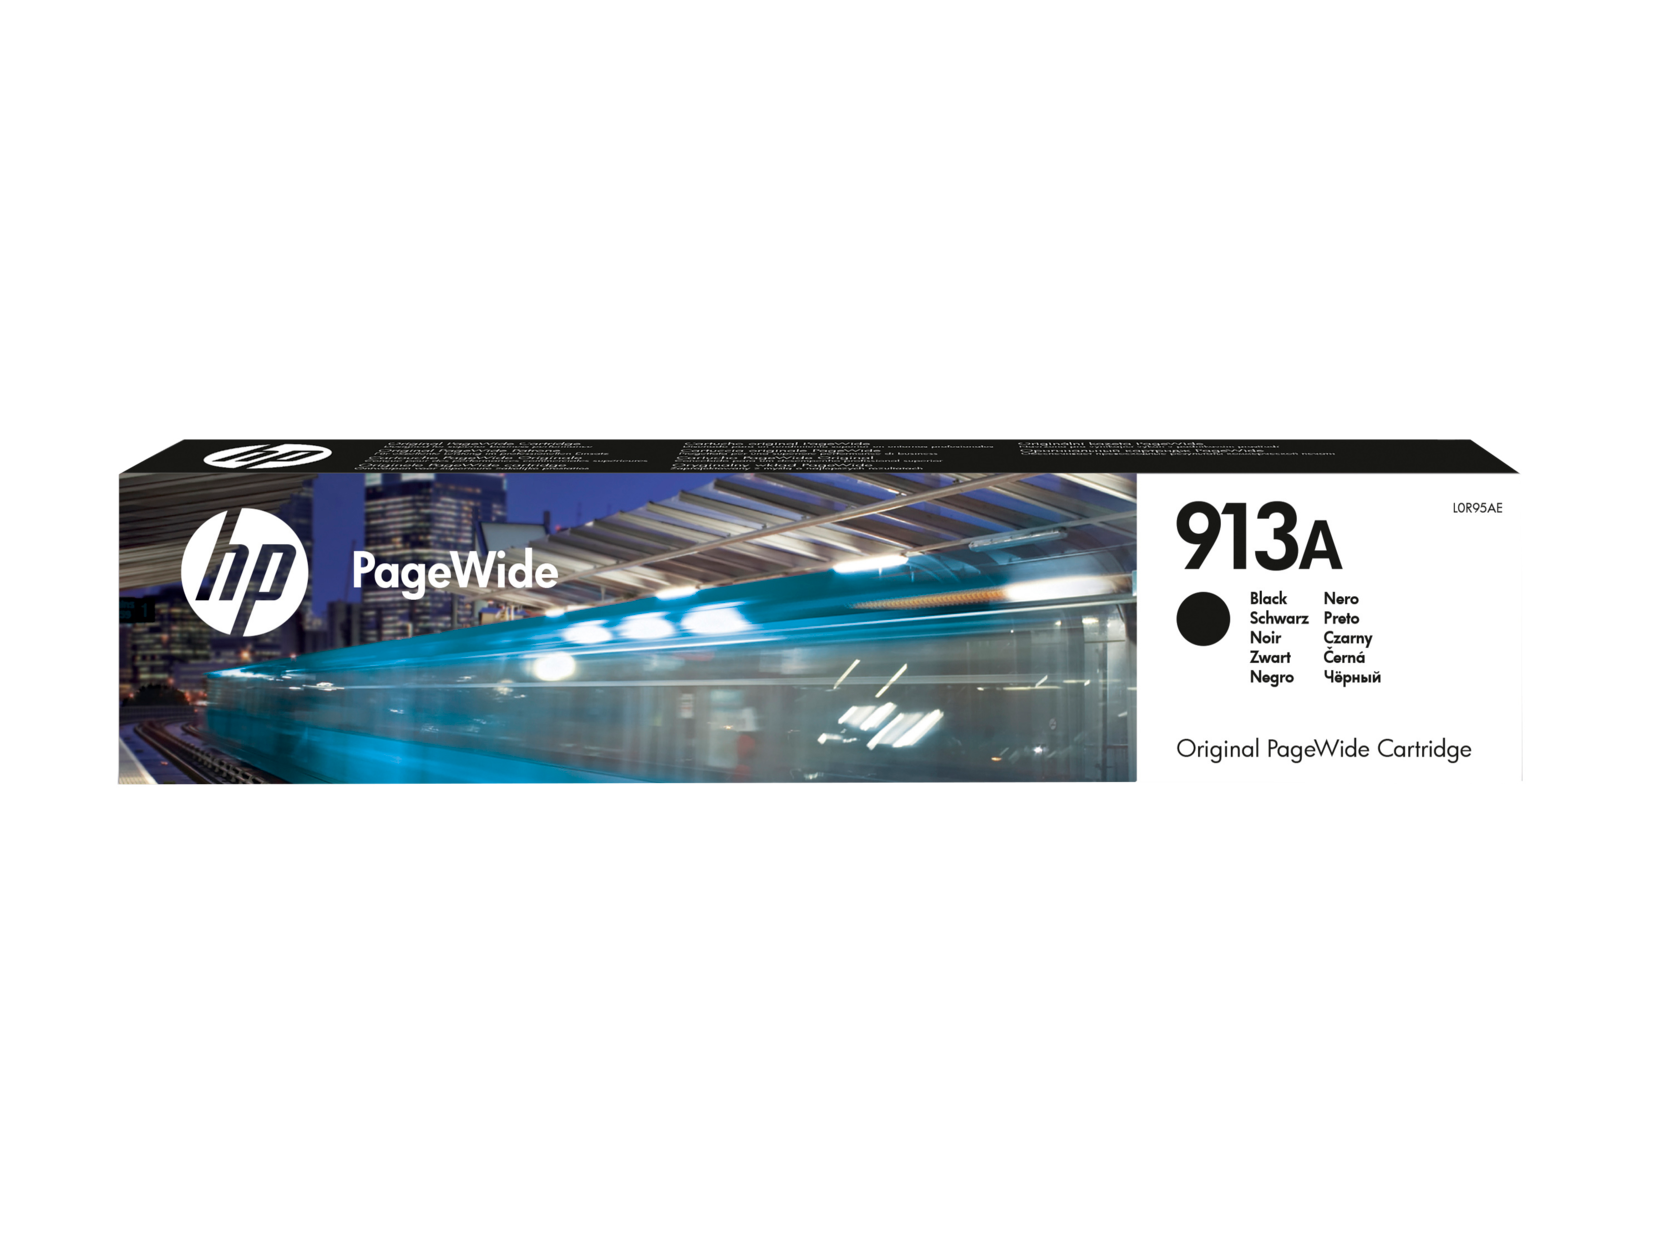 Картридж для печати HP Картридж HP 913A L0R95AE вид печати струйный, цвет Черный, емкость